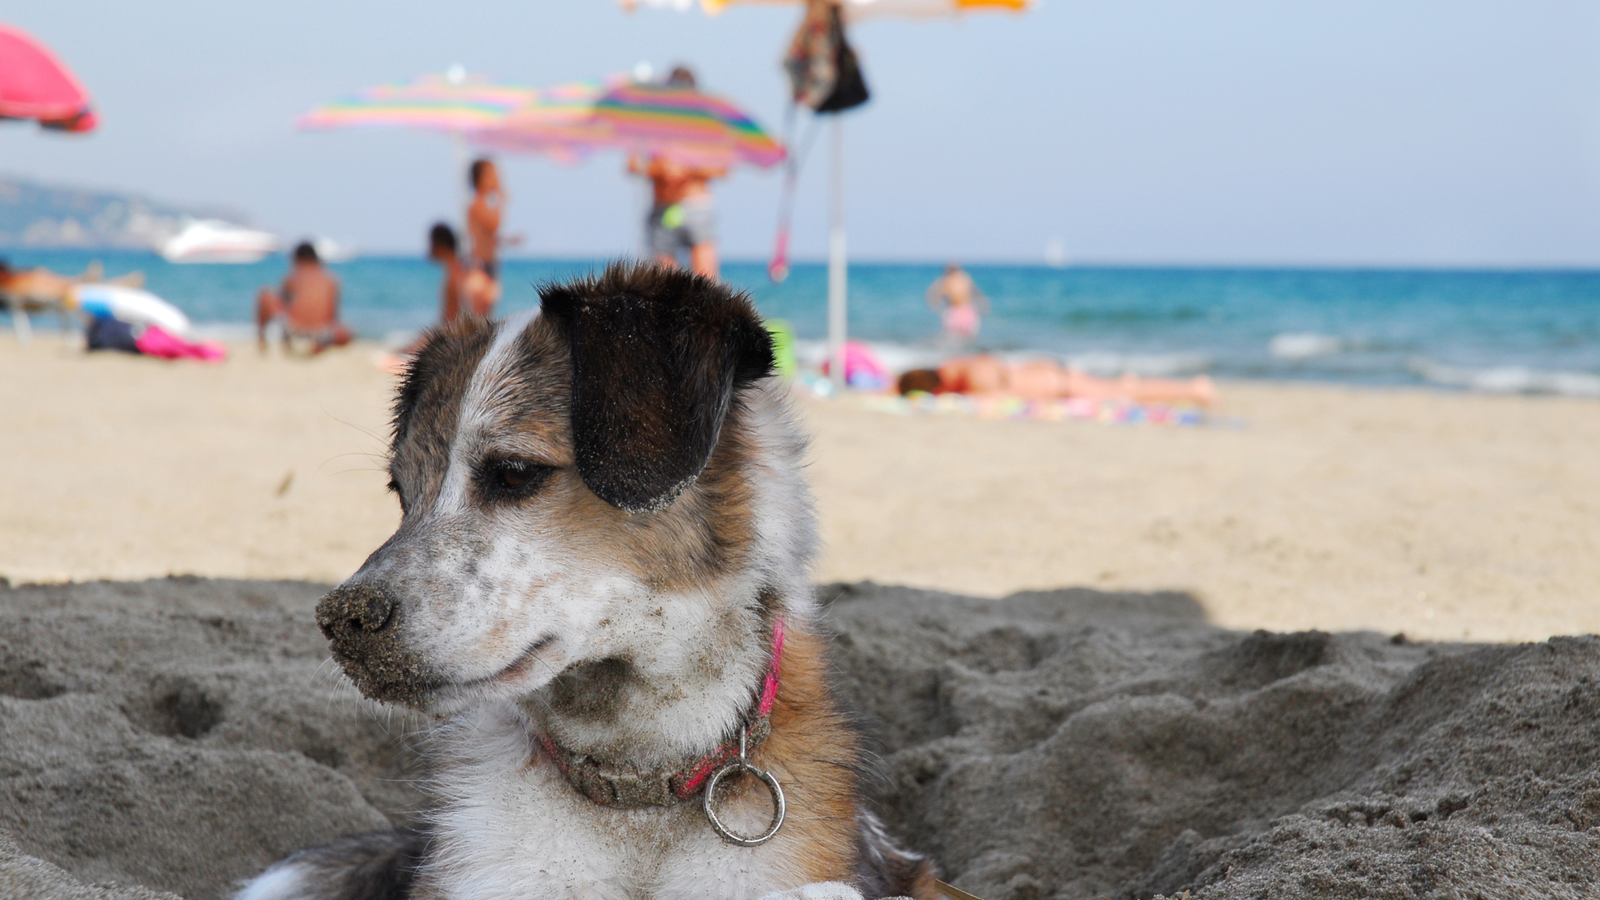 Vacances avec chien sur plage